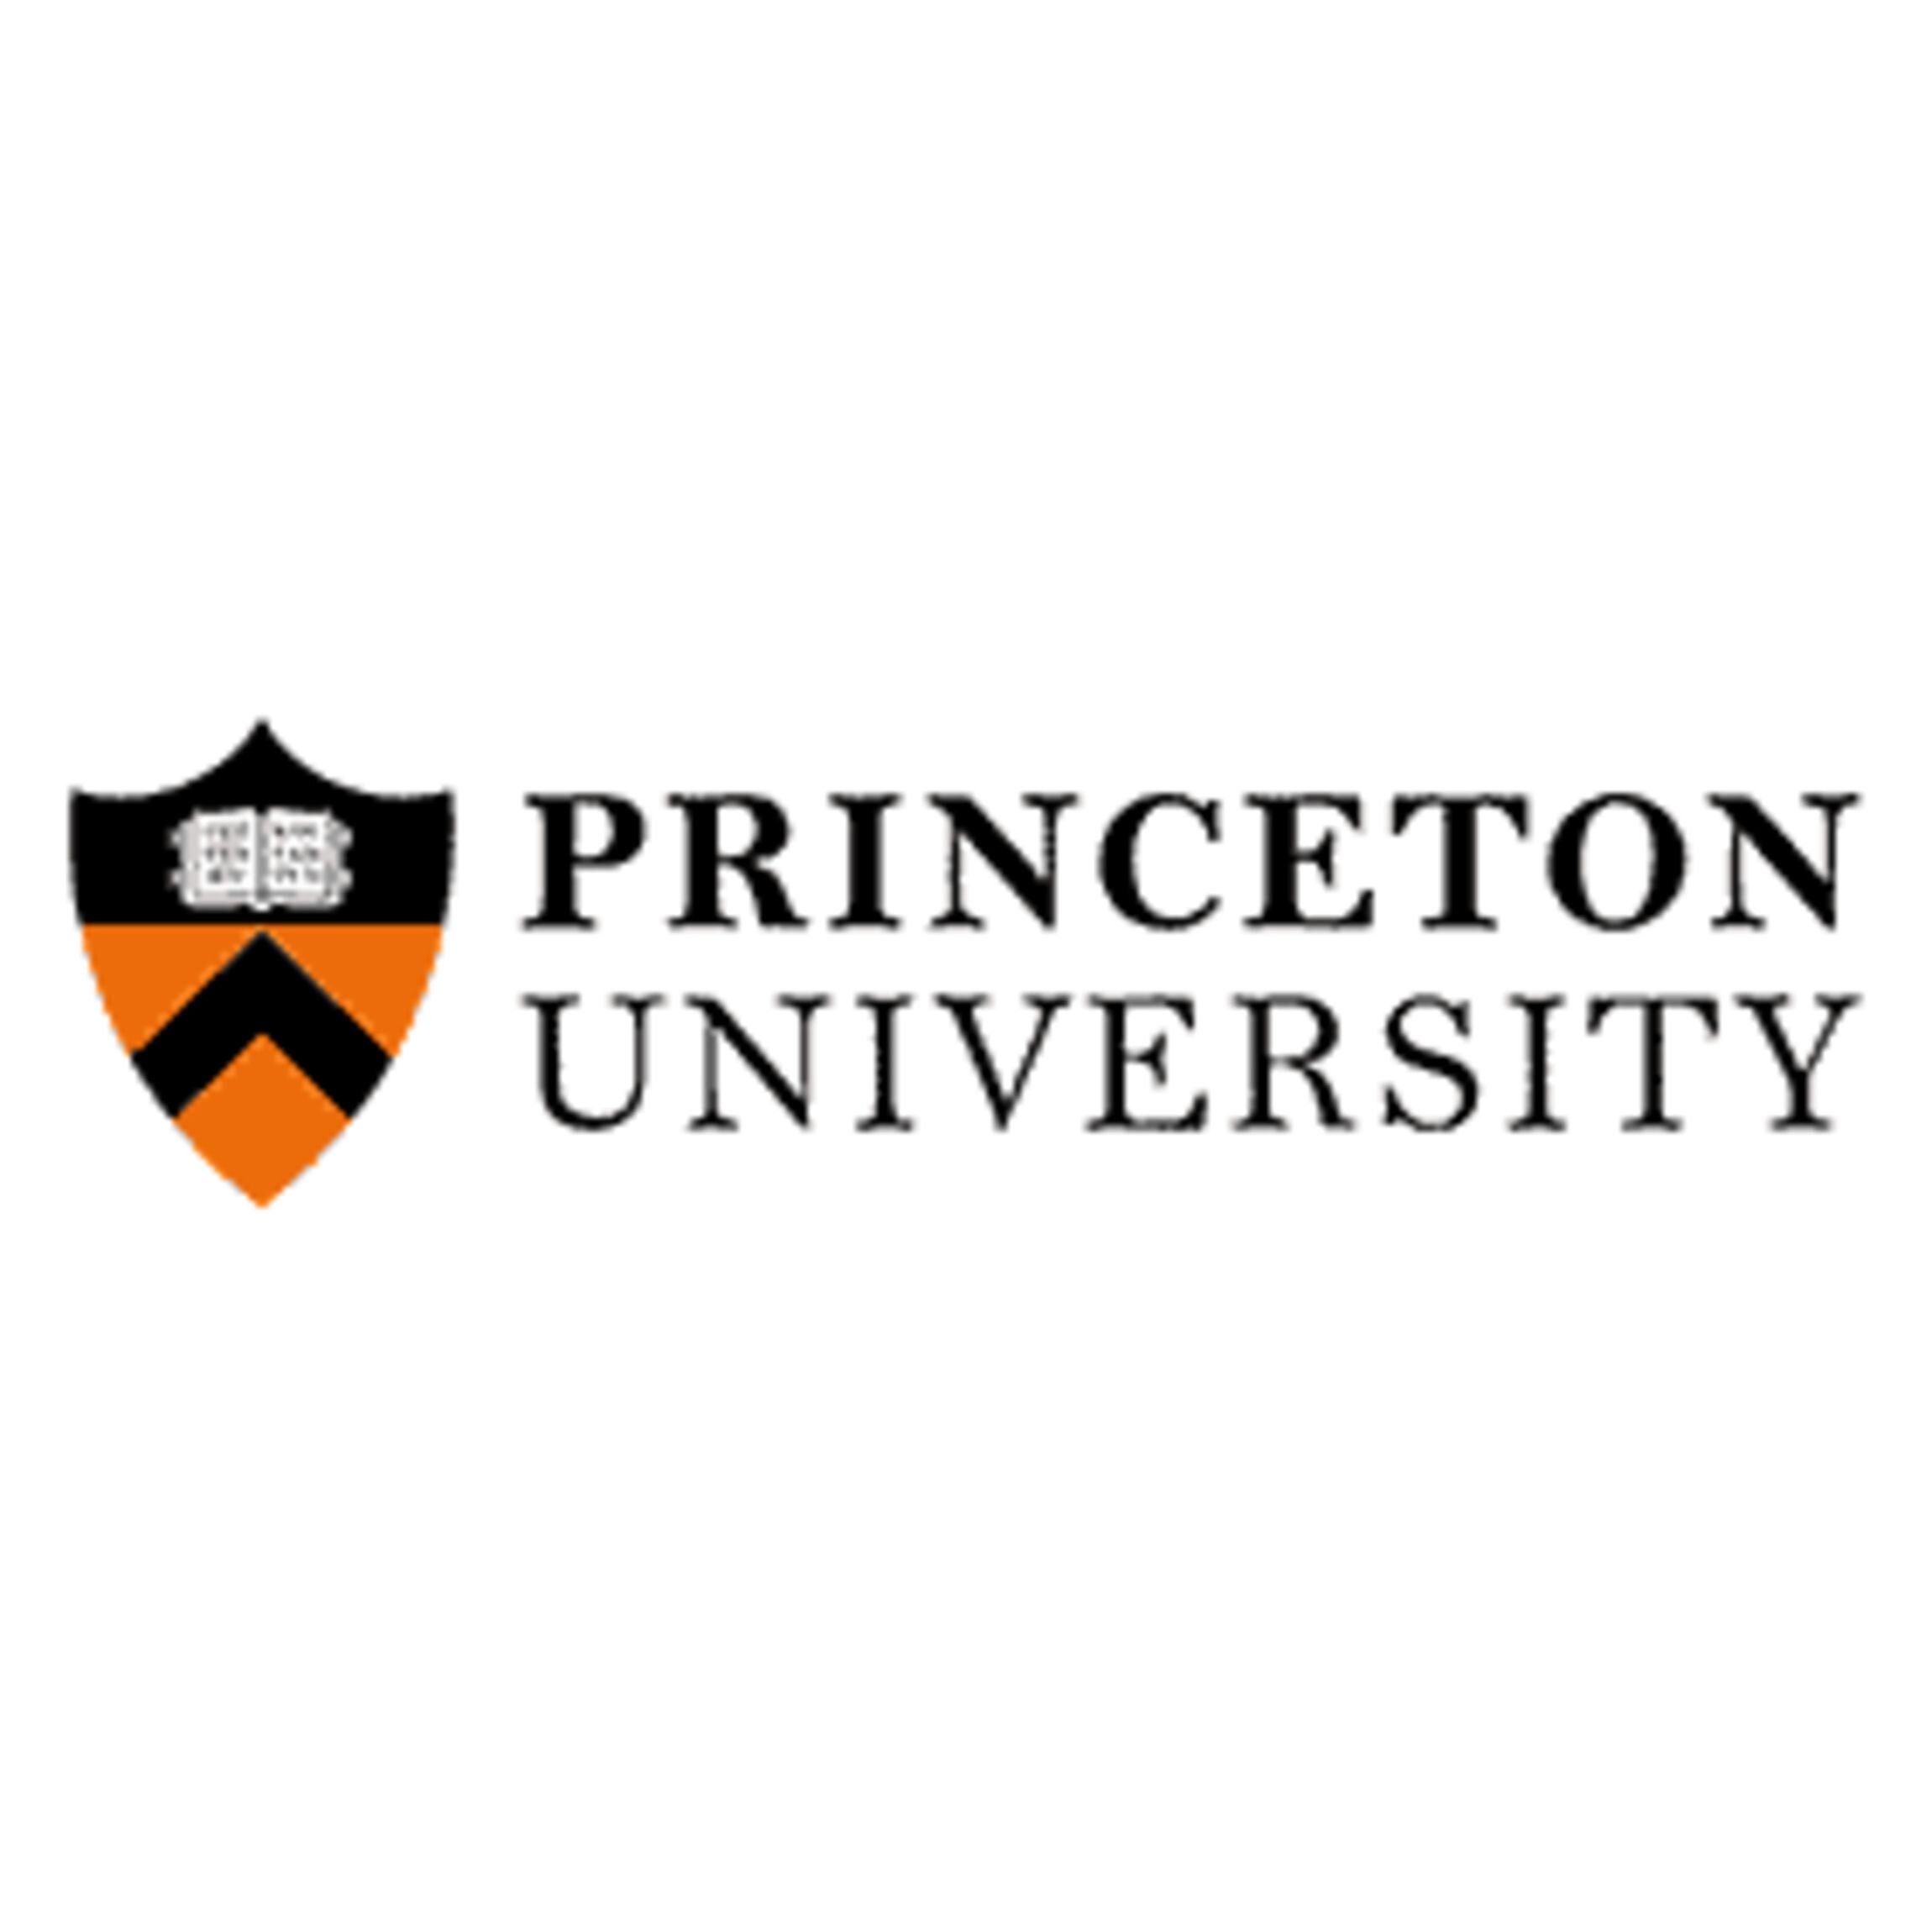 Princeton University.jpg